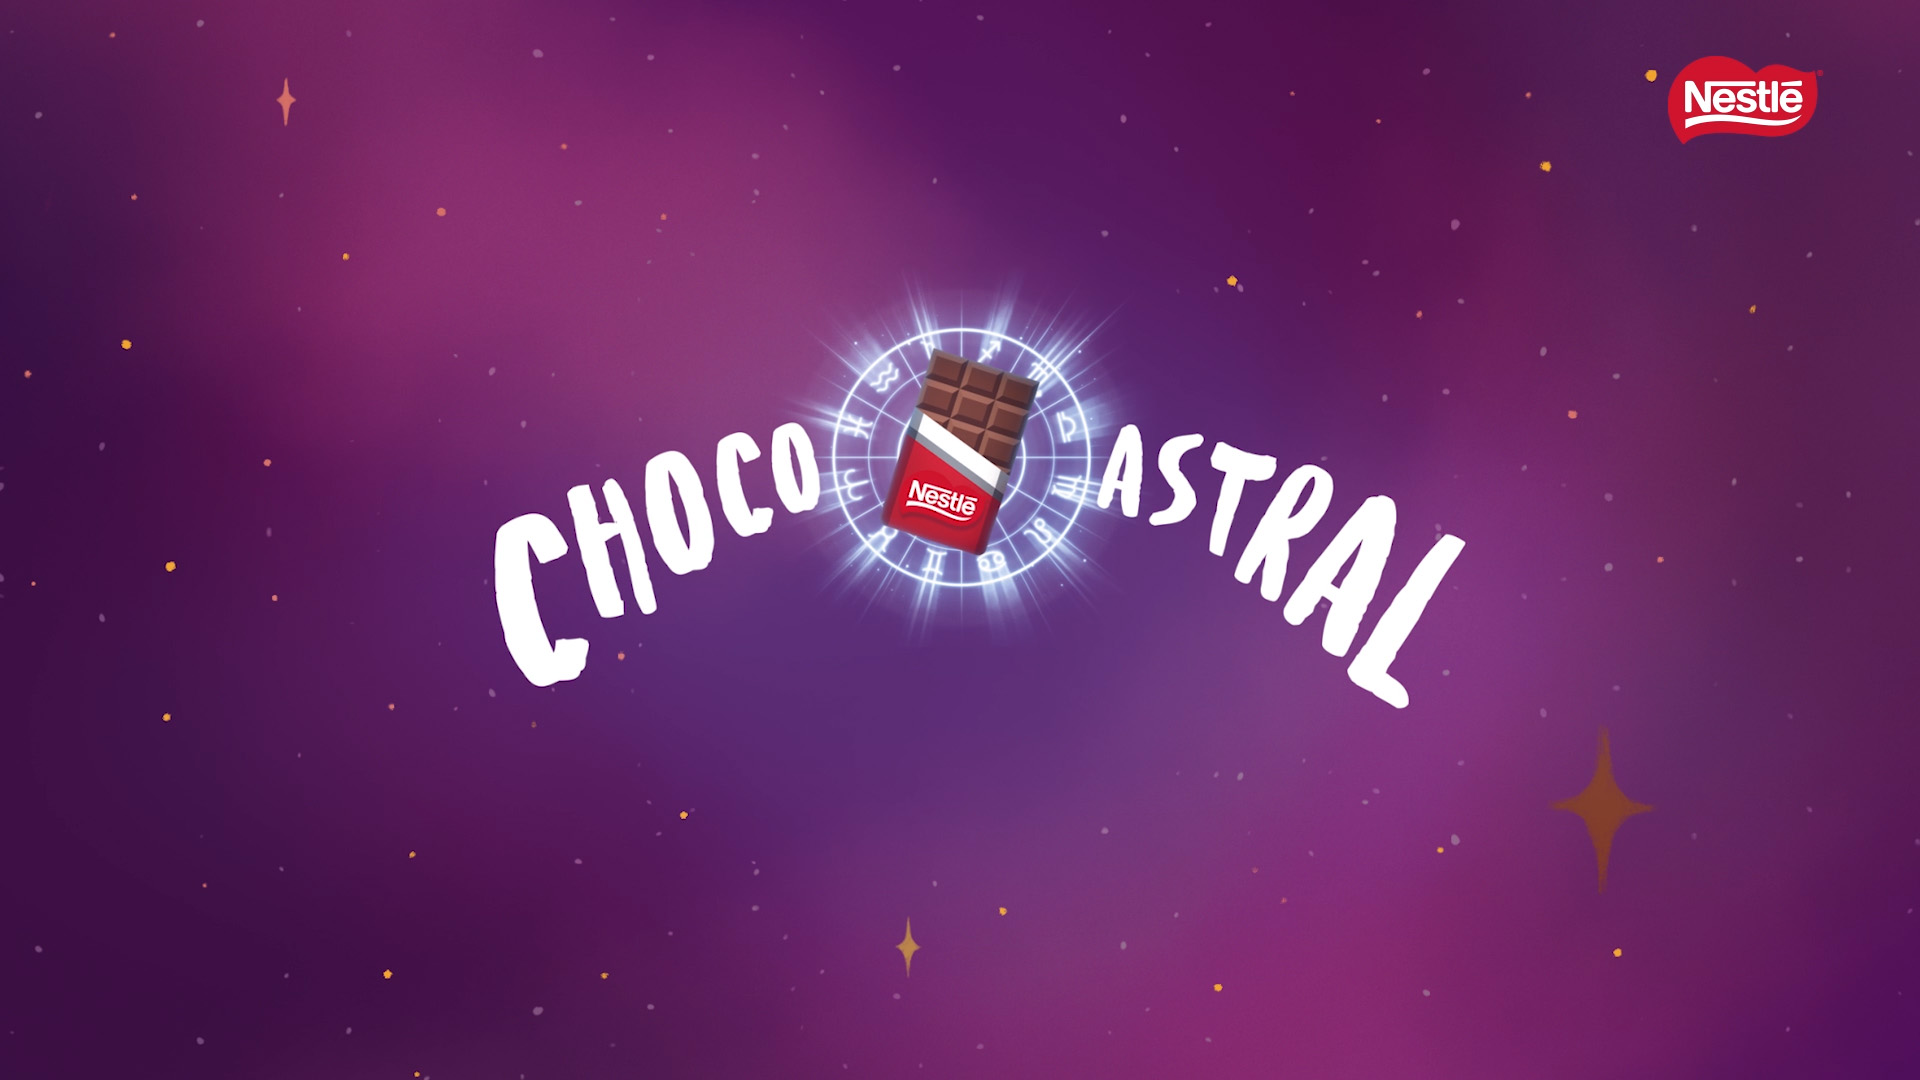 Chocoastral Nestlé